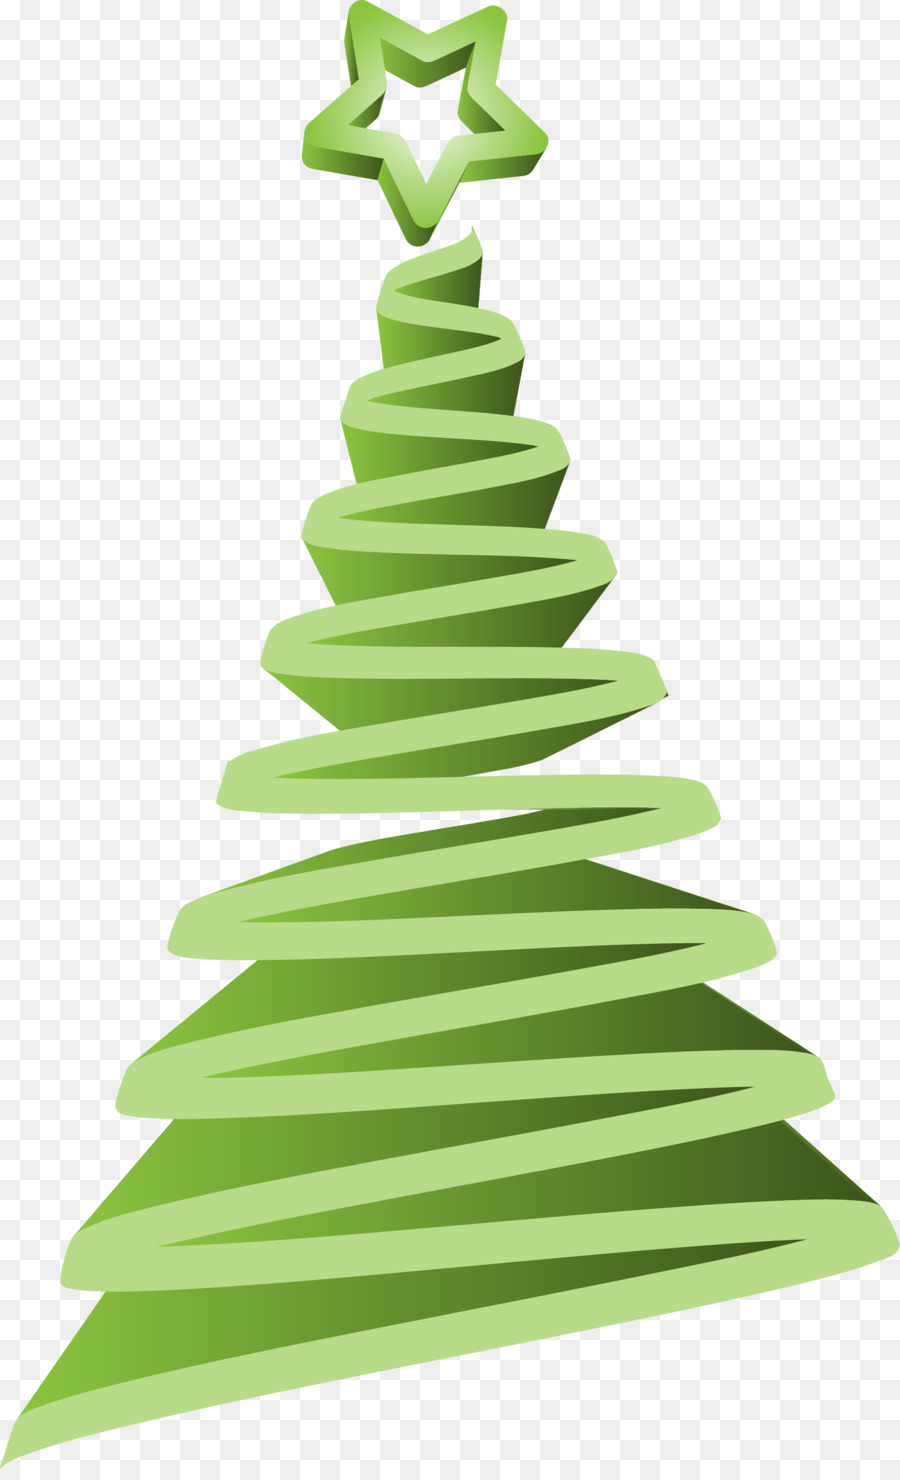 Weihnachtsbaum Grün Clip art - Vektor grüner Weihnachtsbaum